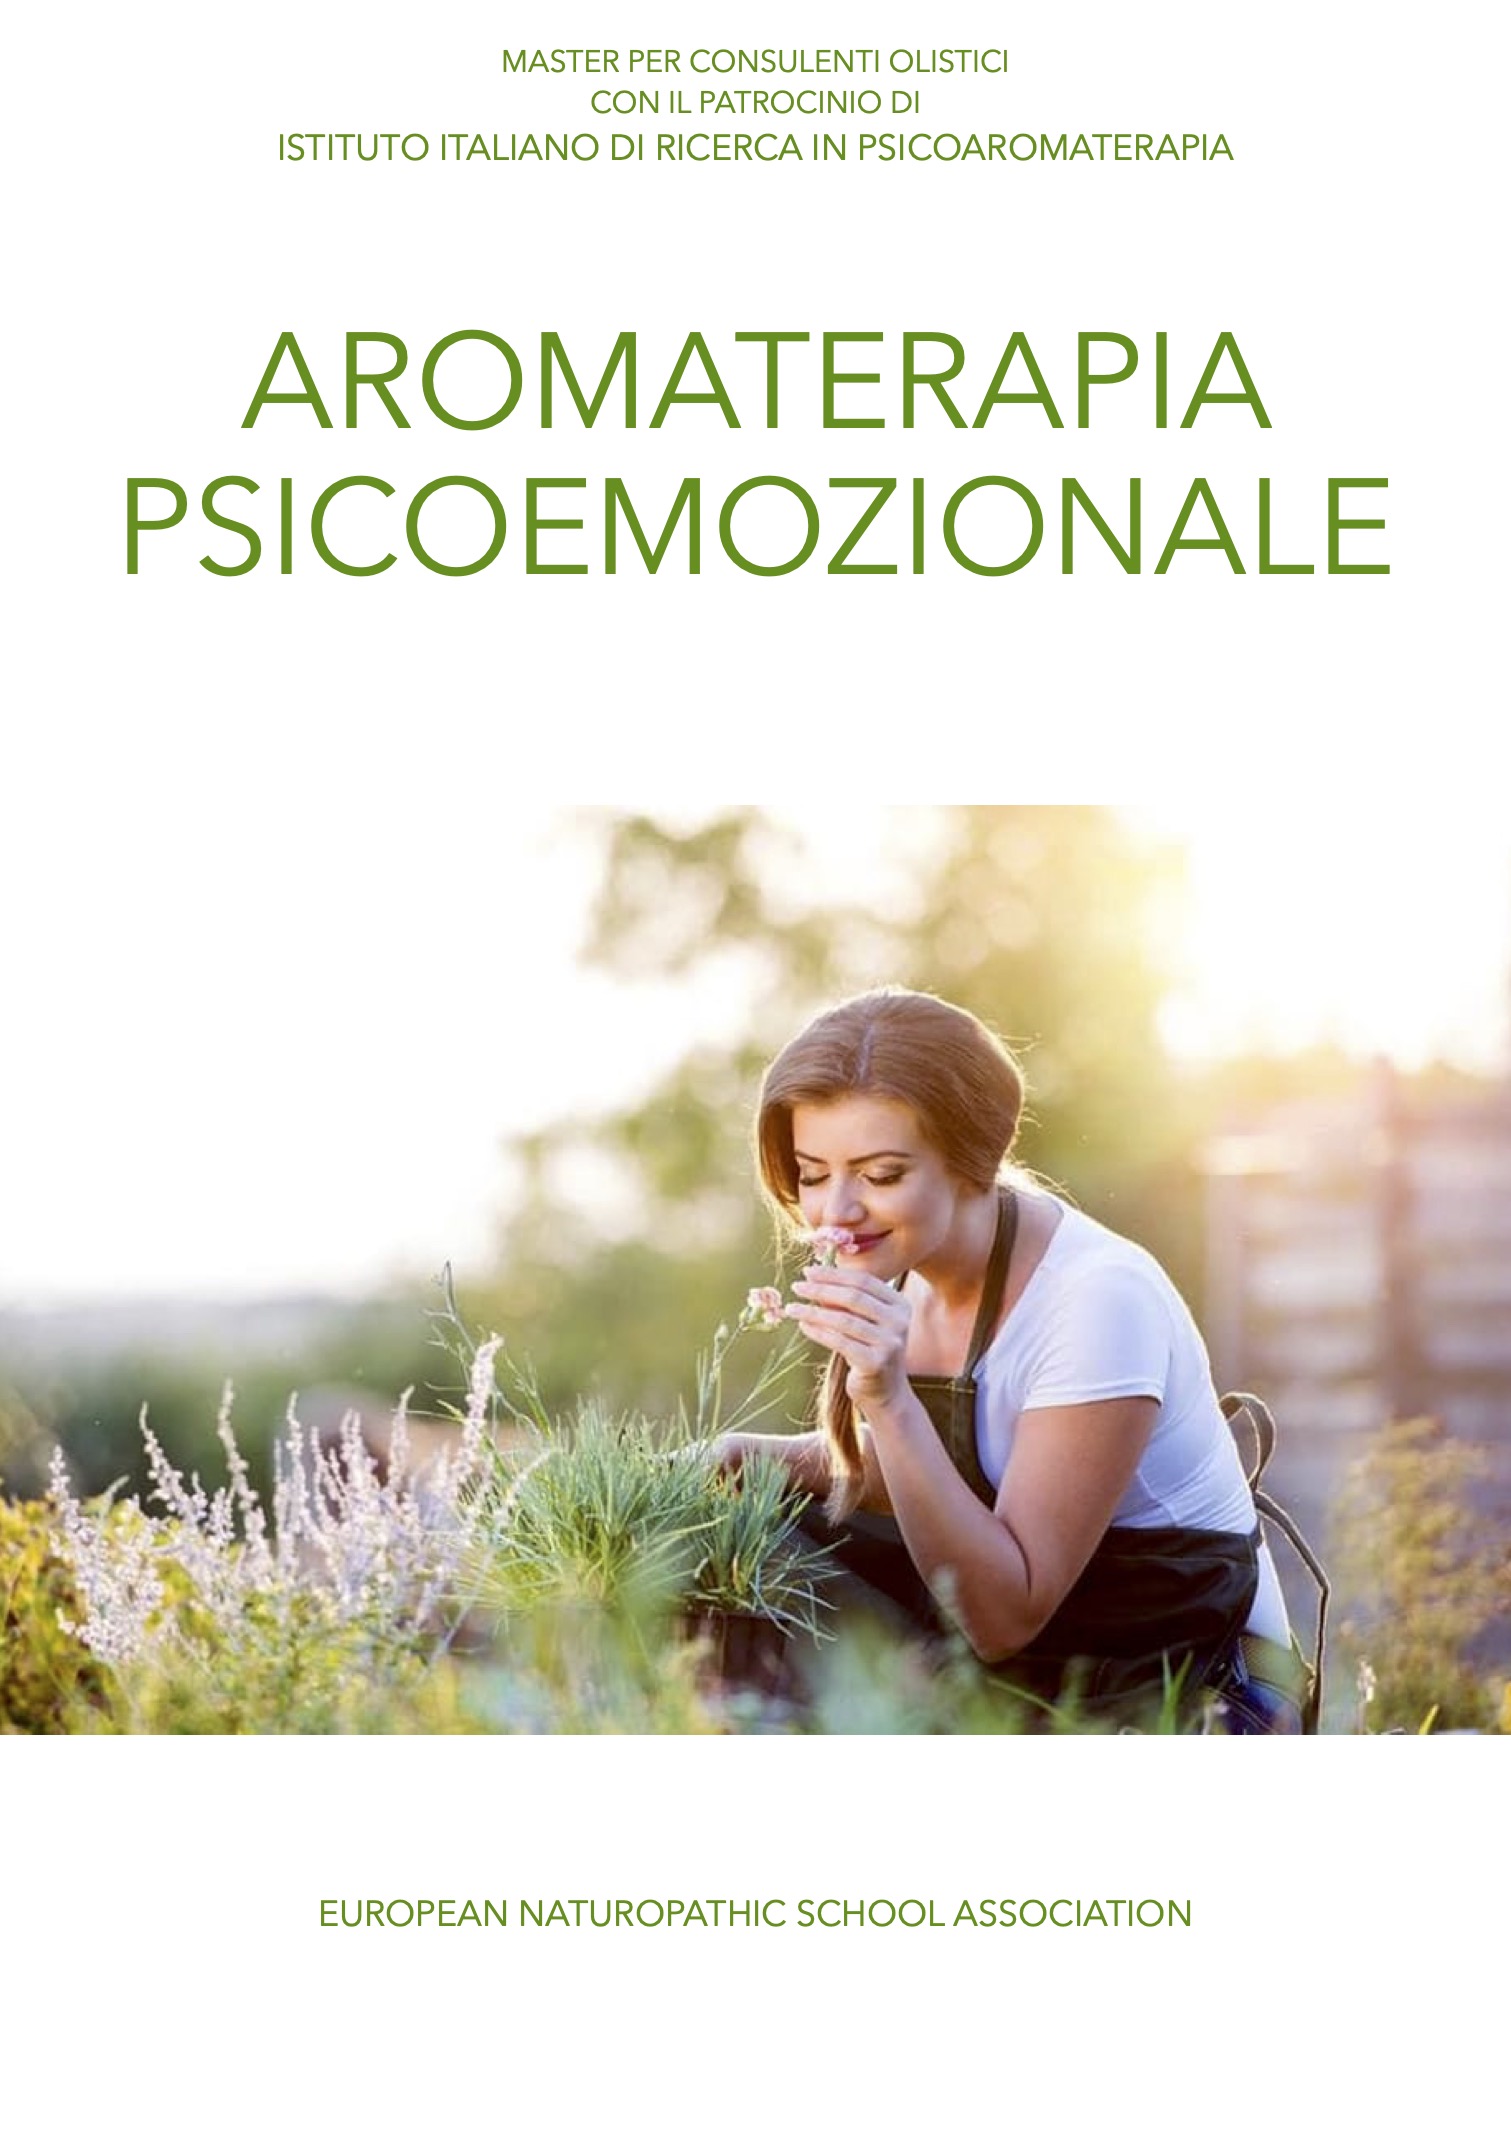 Aromaterapia psicoemozionale